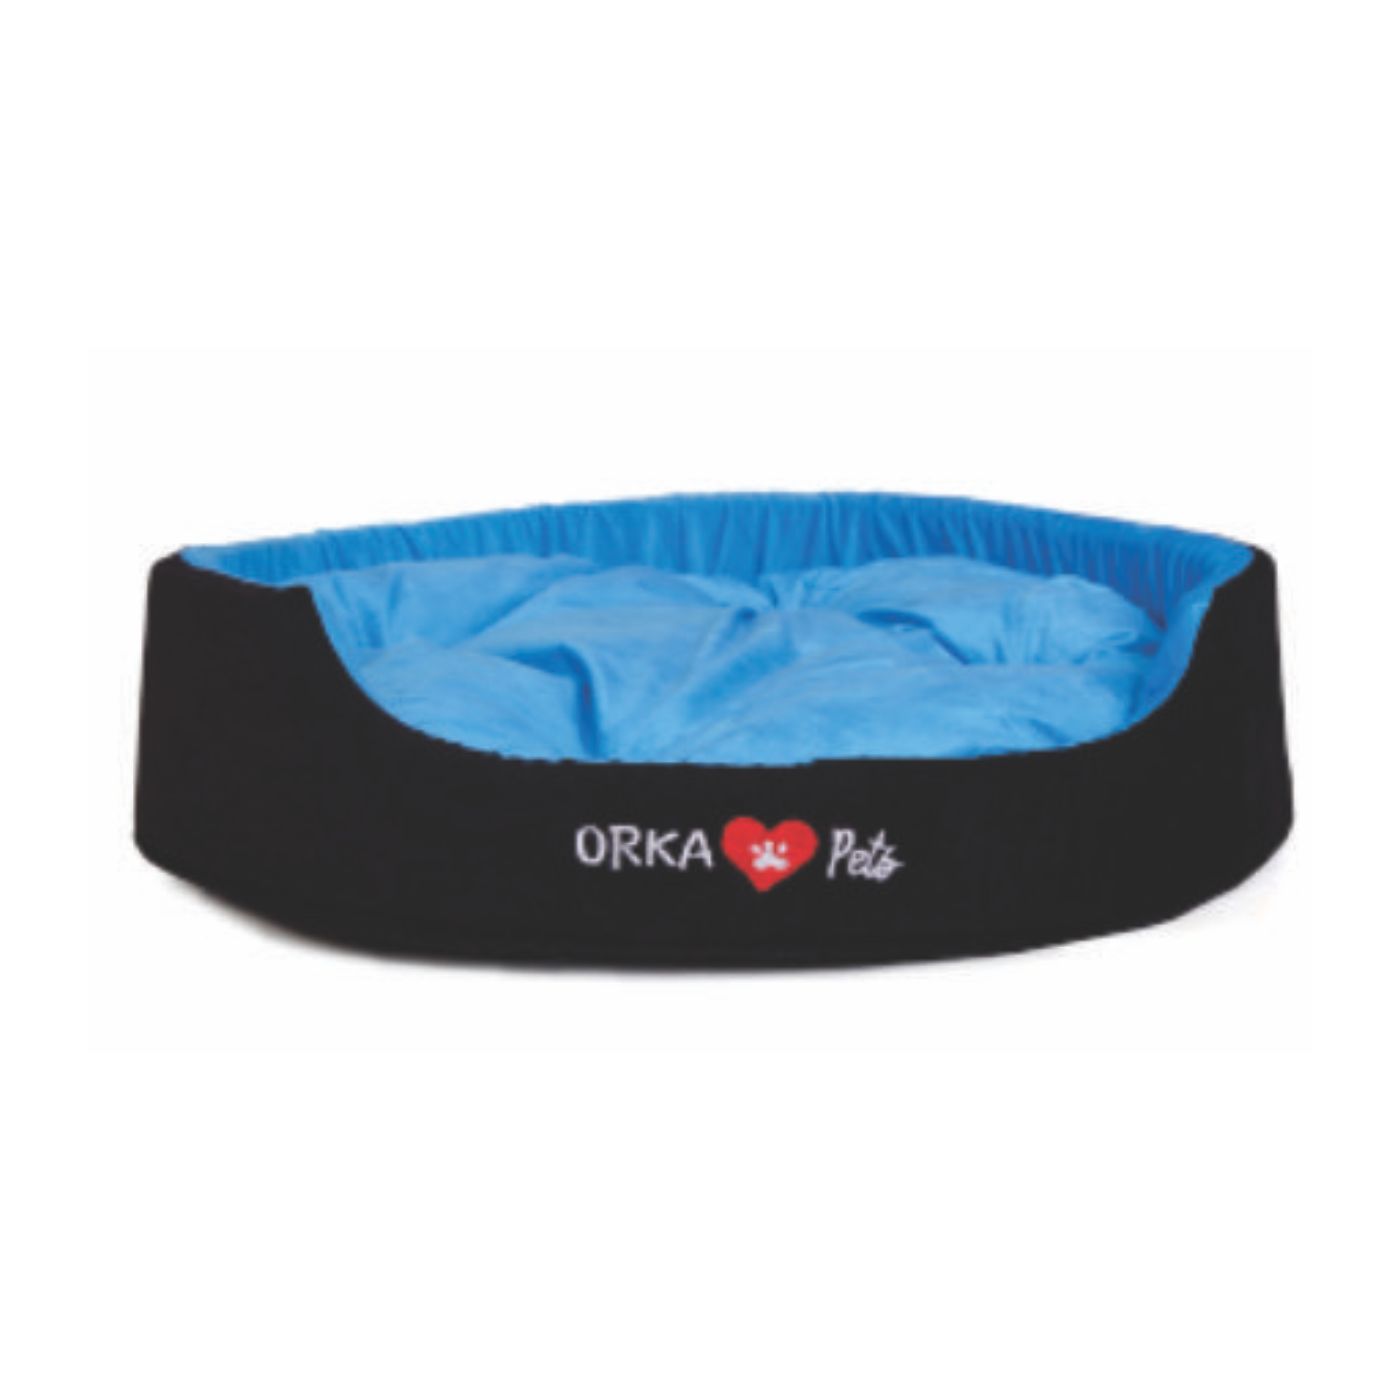 Orka Pet Bed Large - Blue And Black  